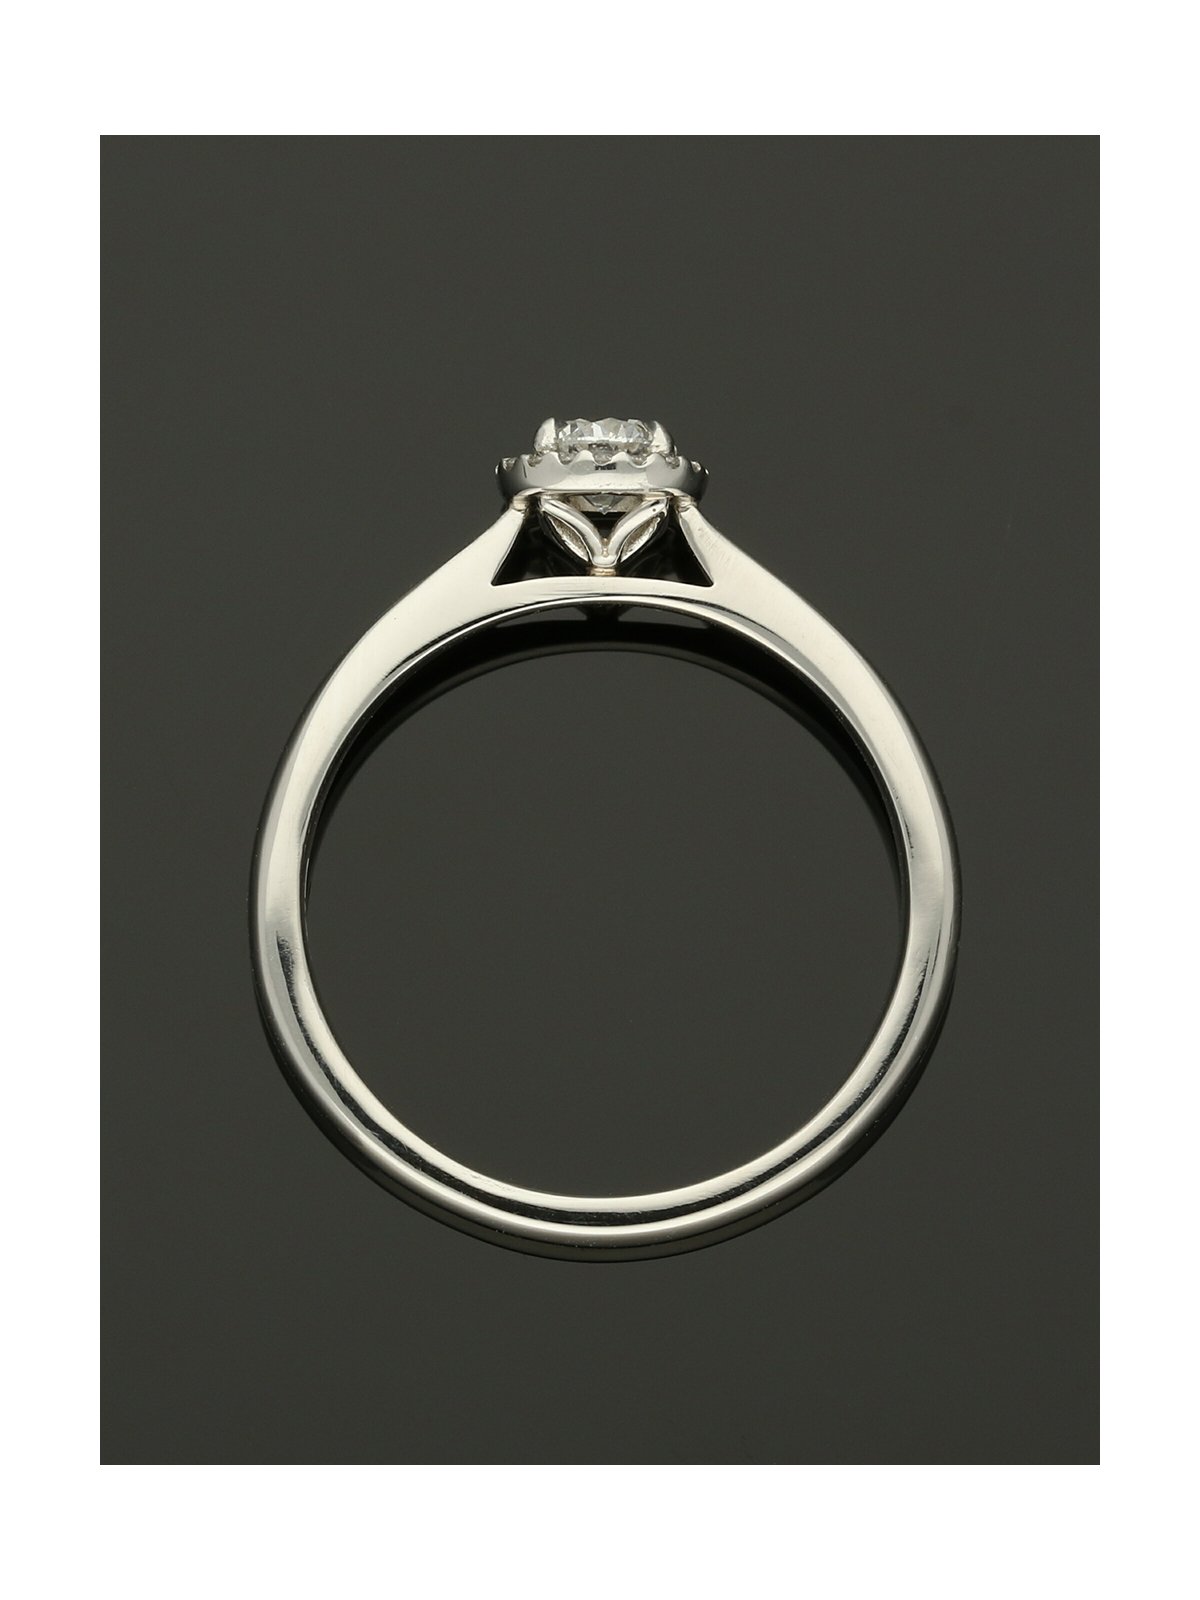 Diamond Halo Engagement Ring 0.25ct Round Brilliant Cut in Platinum